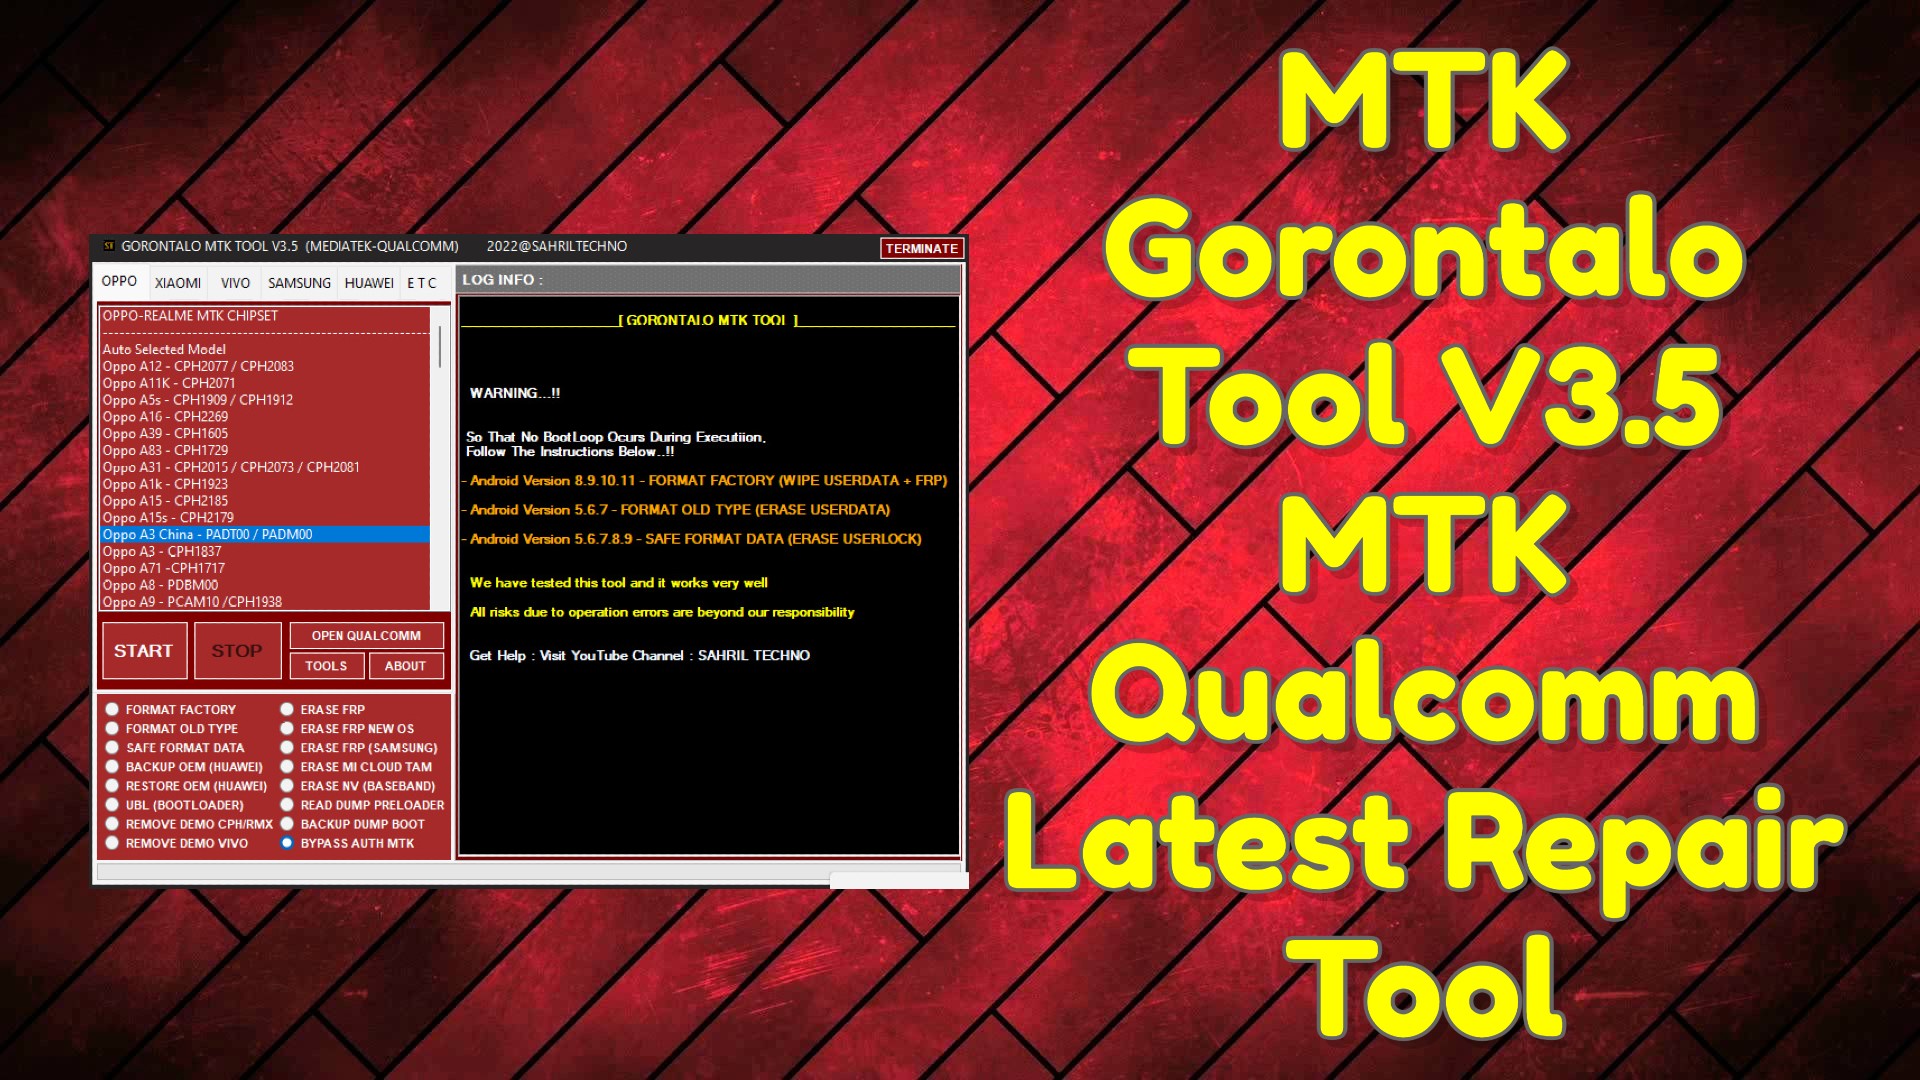 MTK Gorontalo Tool V3.5 MTK Qualcomm Latest Repair tool